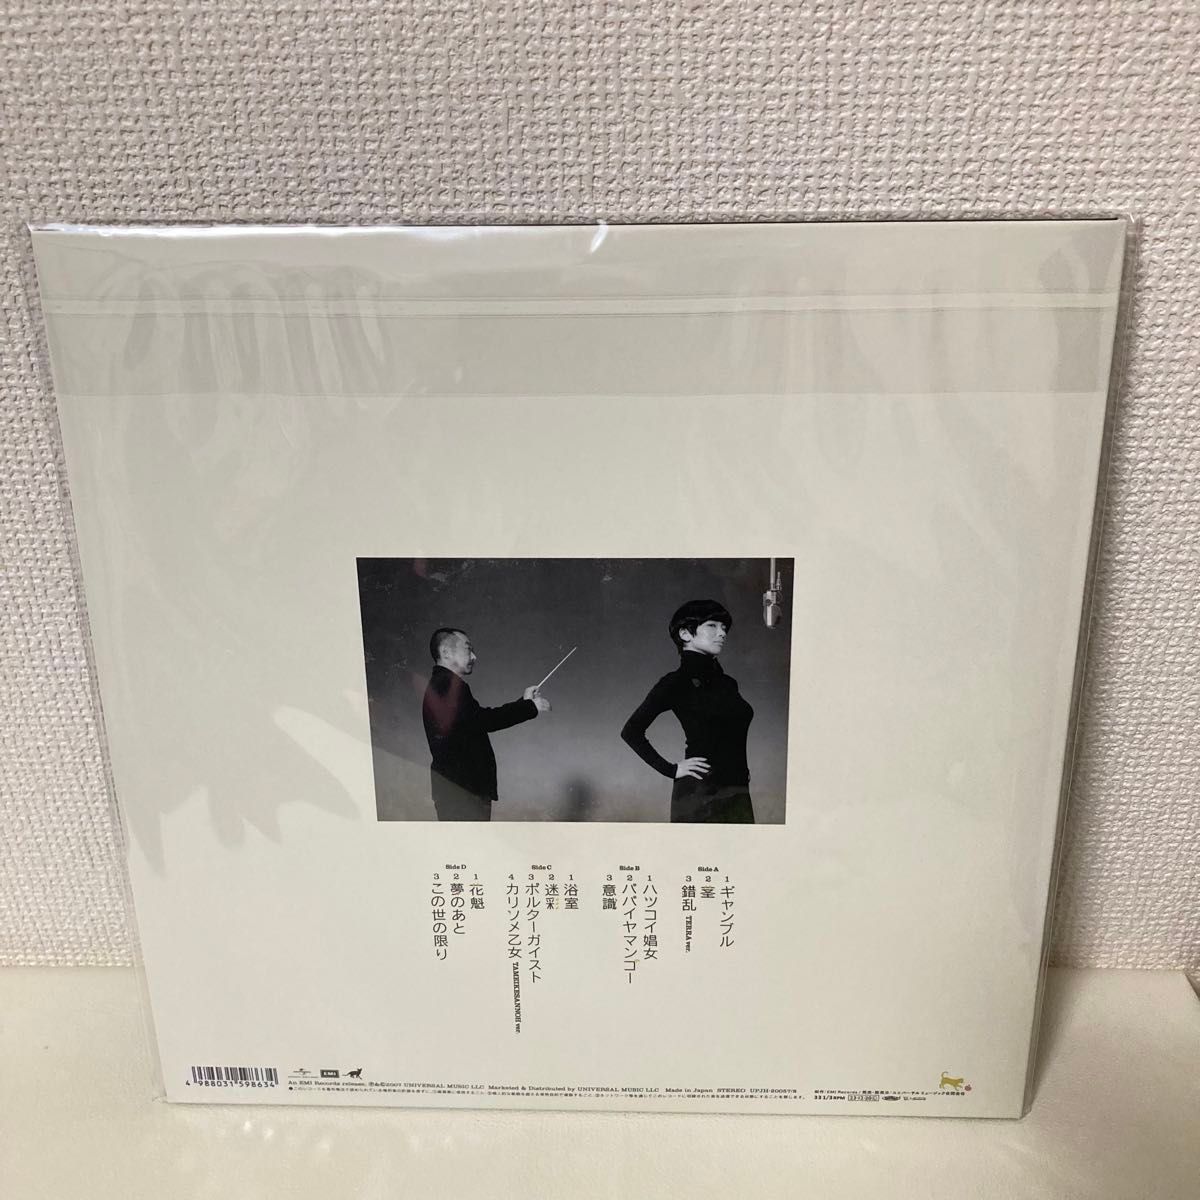 【新品】 椎名林檎 平成風俗 レコード LP 初回生産限定盤 アナログ盤 2枚組